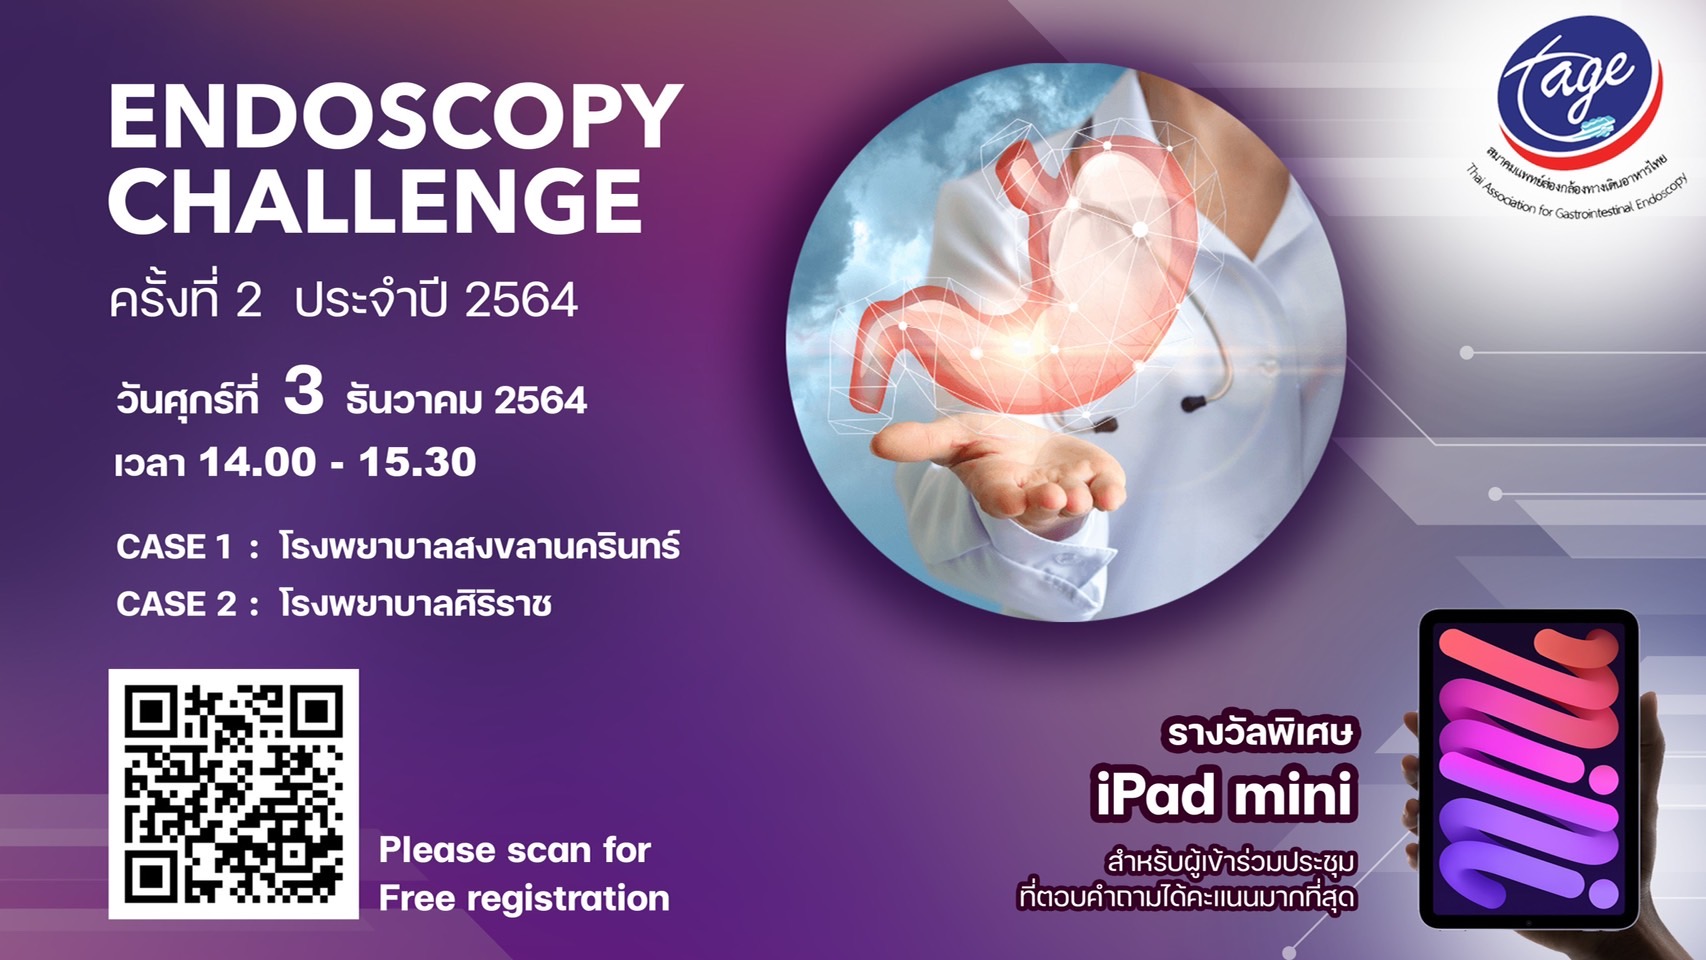 TAGE endoscopy challenge 2021 ep. II